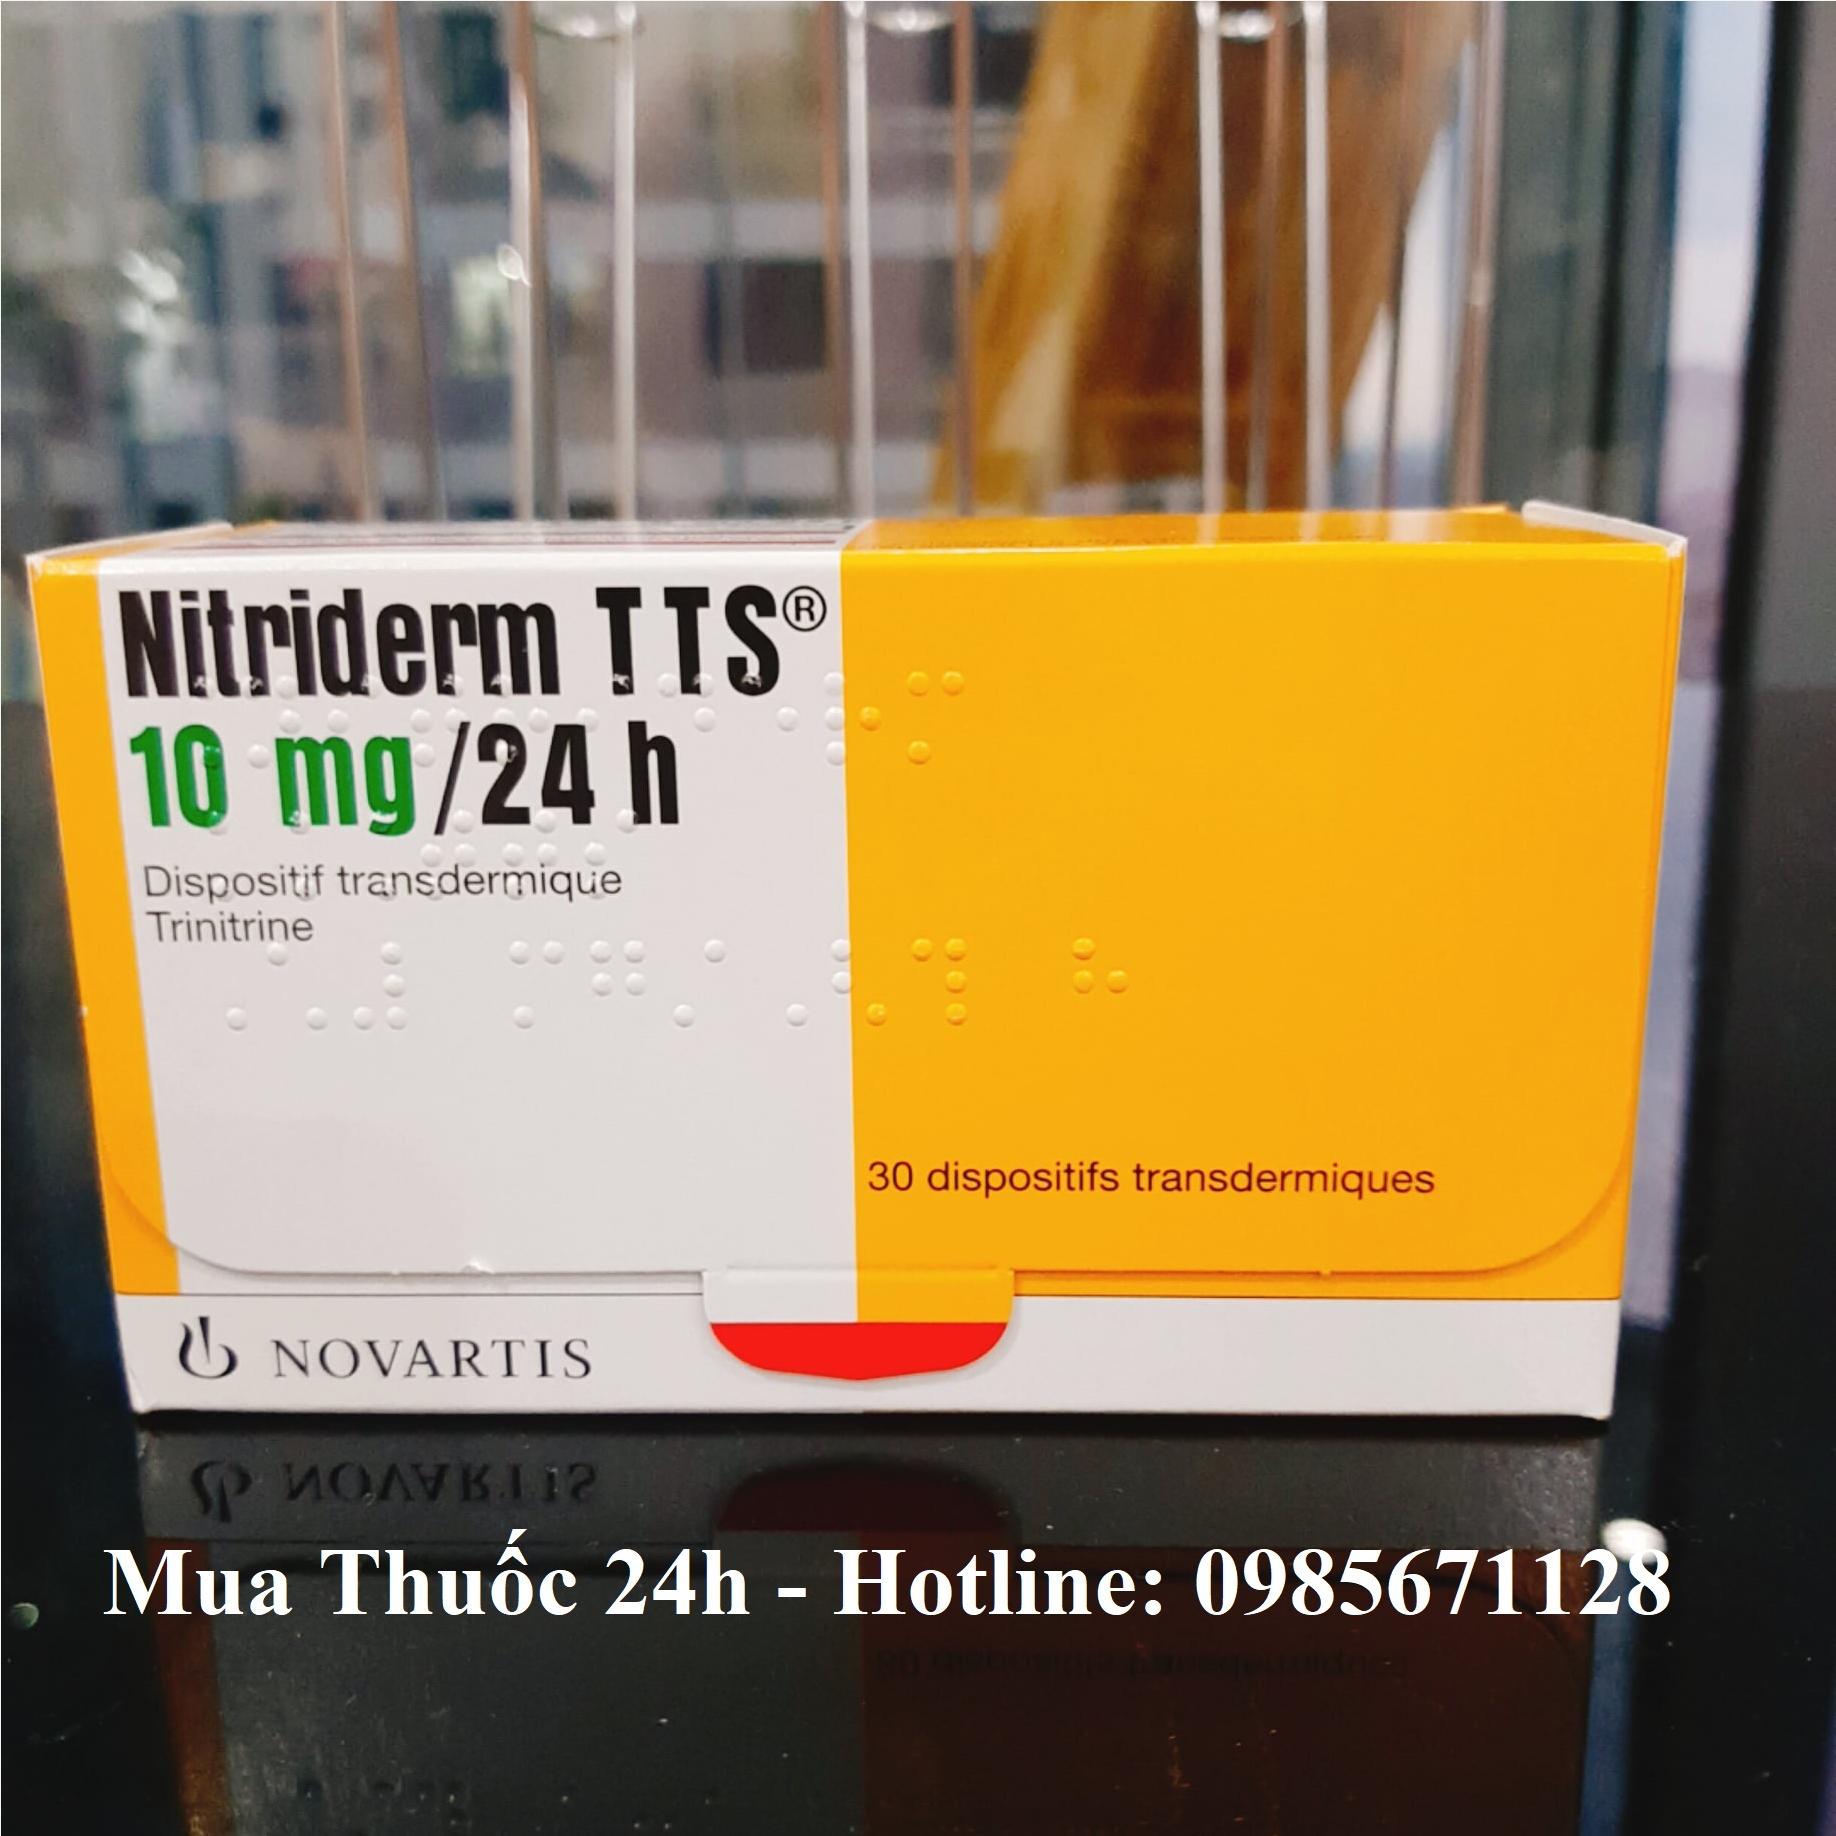 Thuốc Nitriderm TTS 10mg giá bao nhiêu mua ở đâu